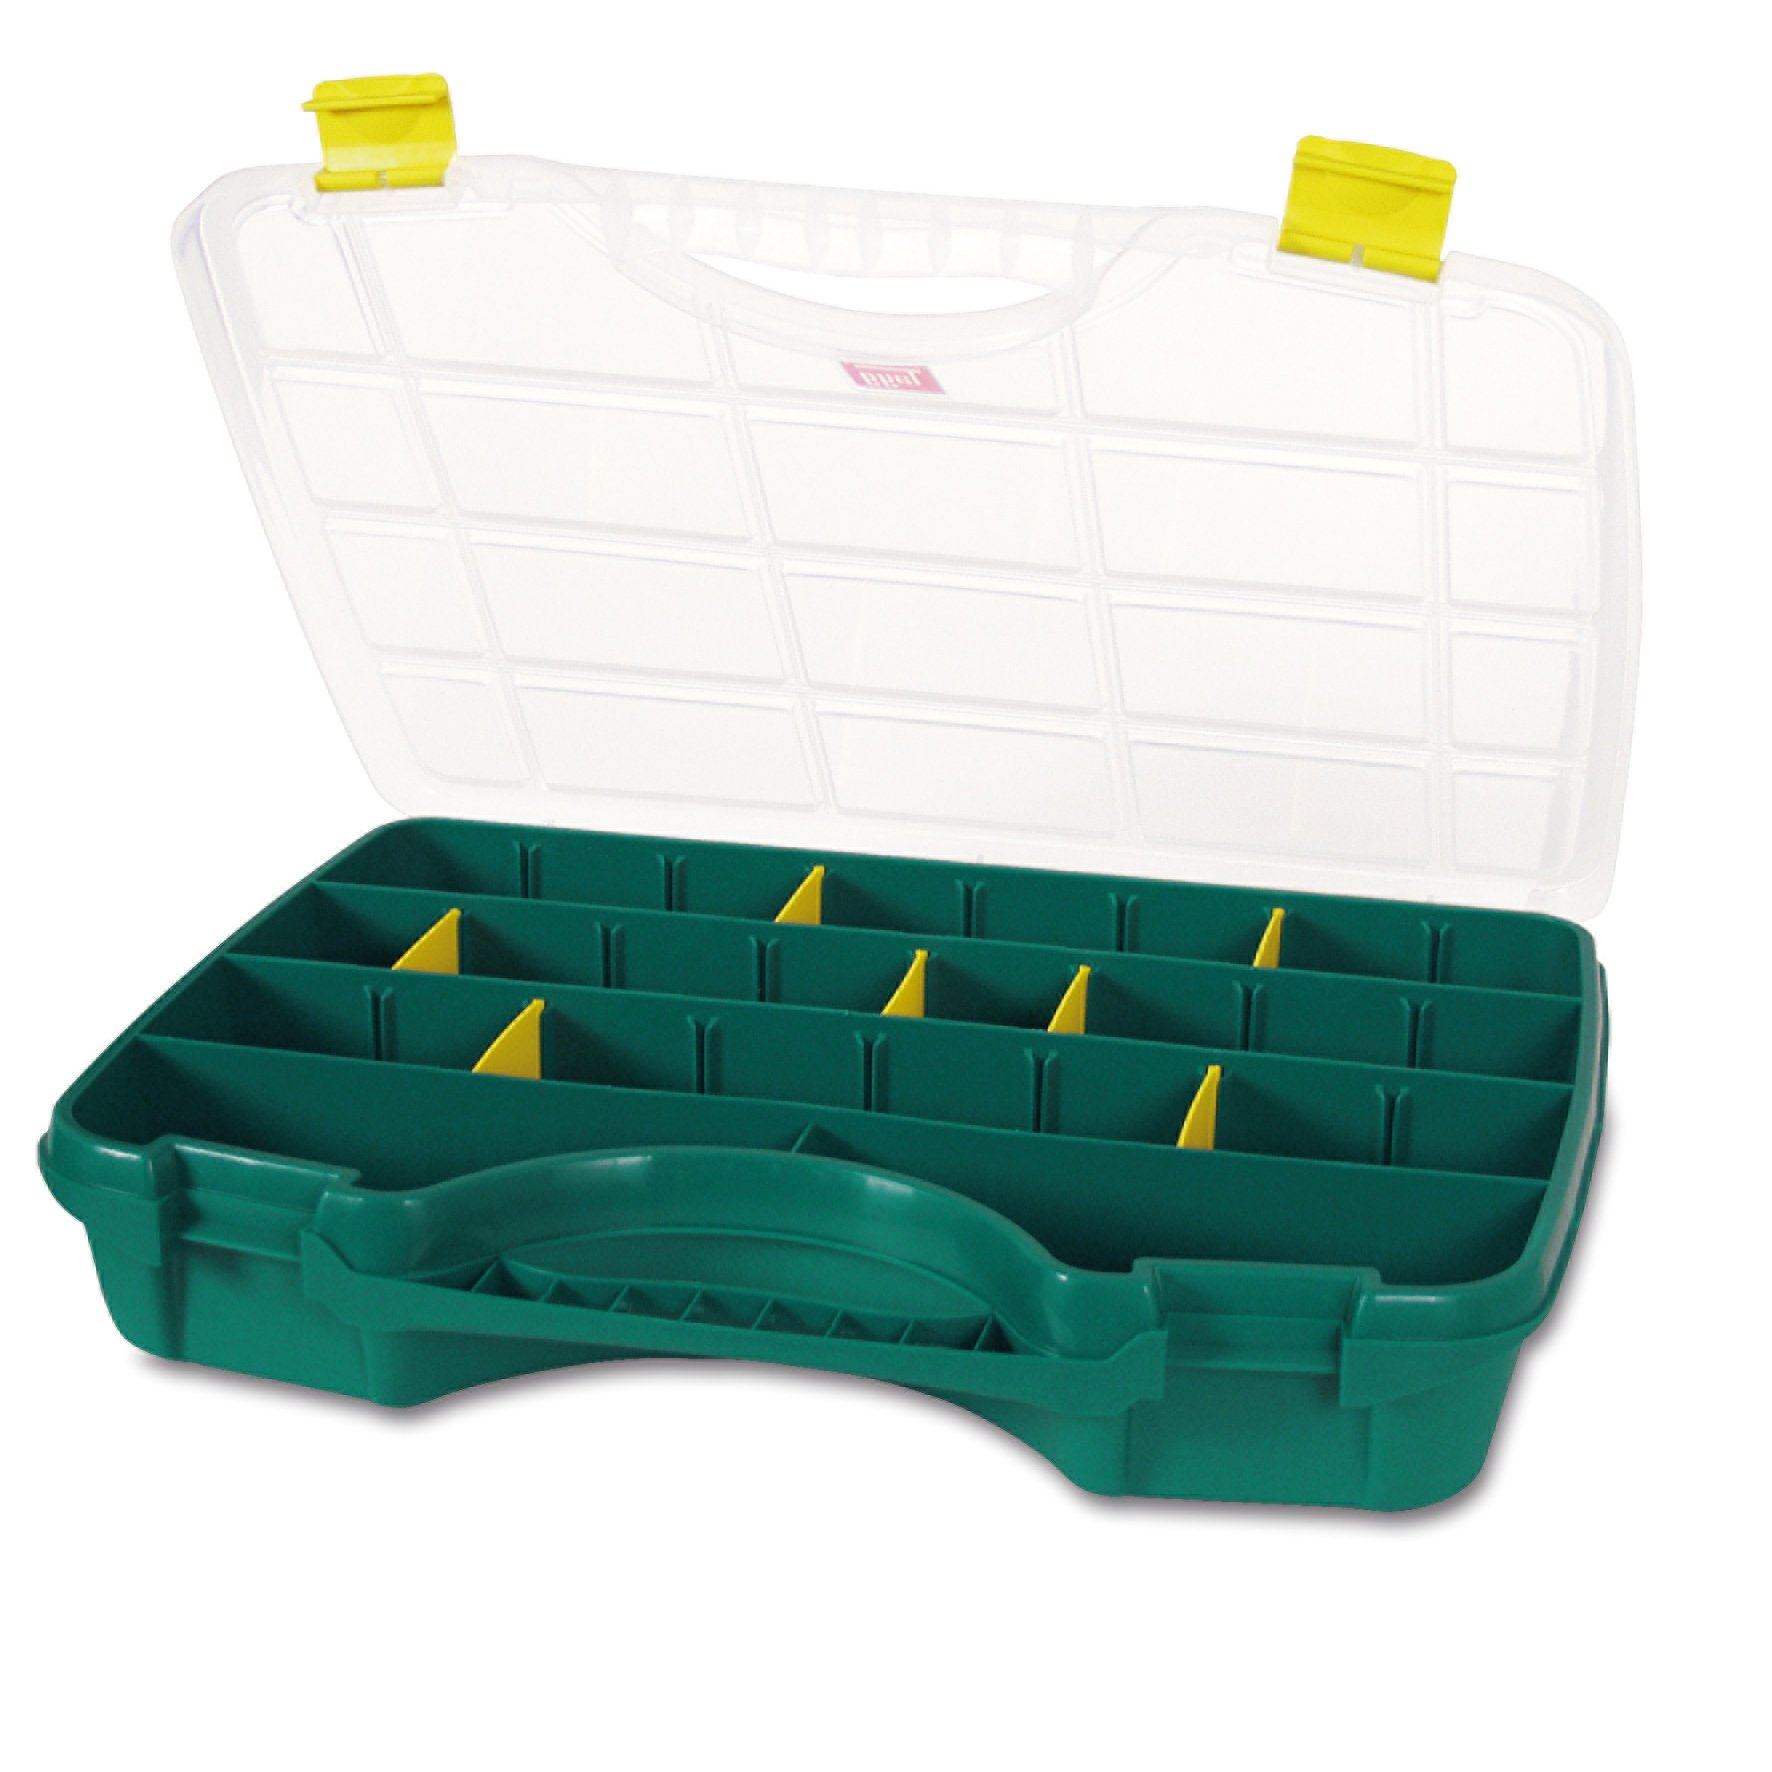 Органайзер Tayg Box 24-26 Estuche, для хранения мелких предметов, 46х35х8,1 см, зеленый (024009) - фото 1